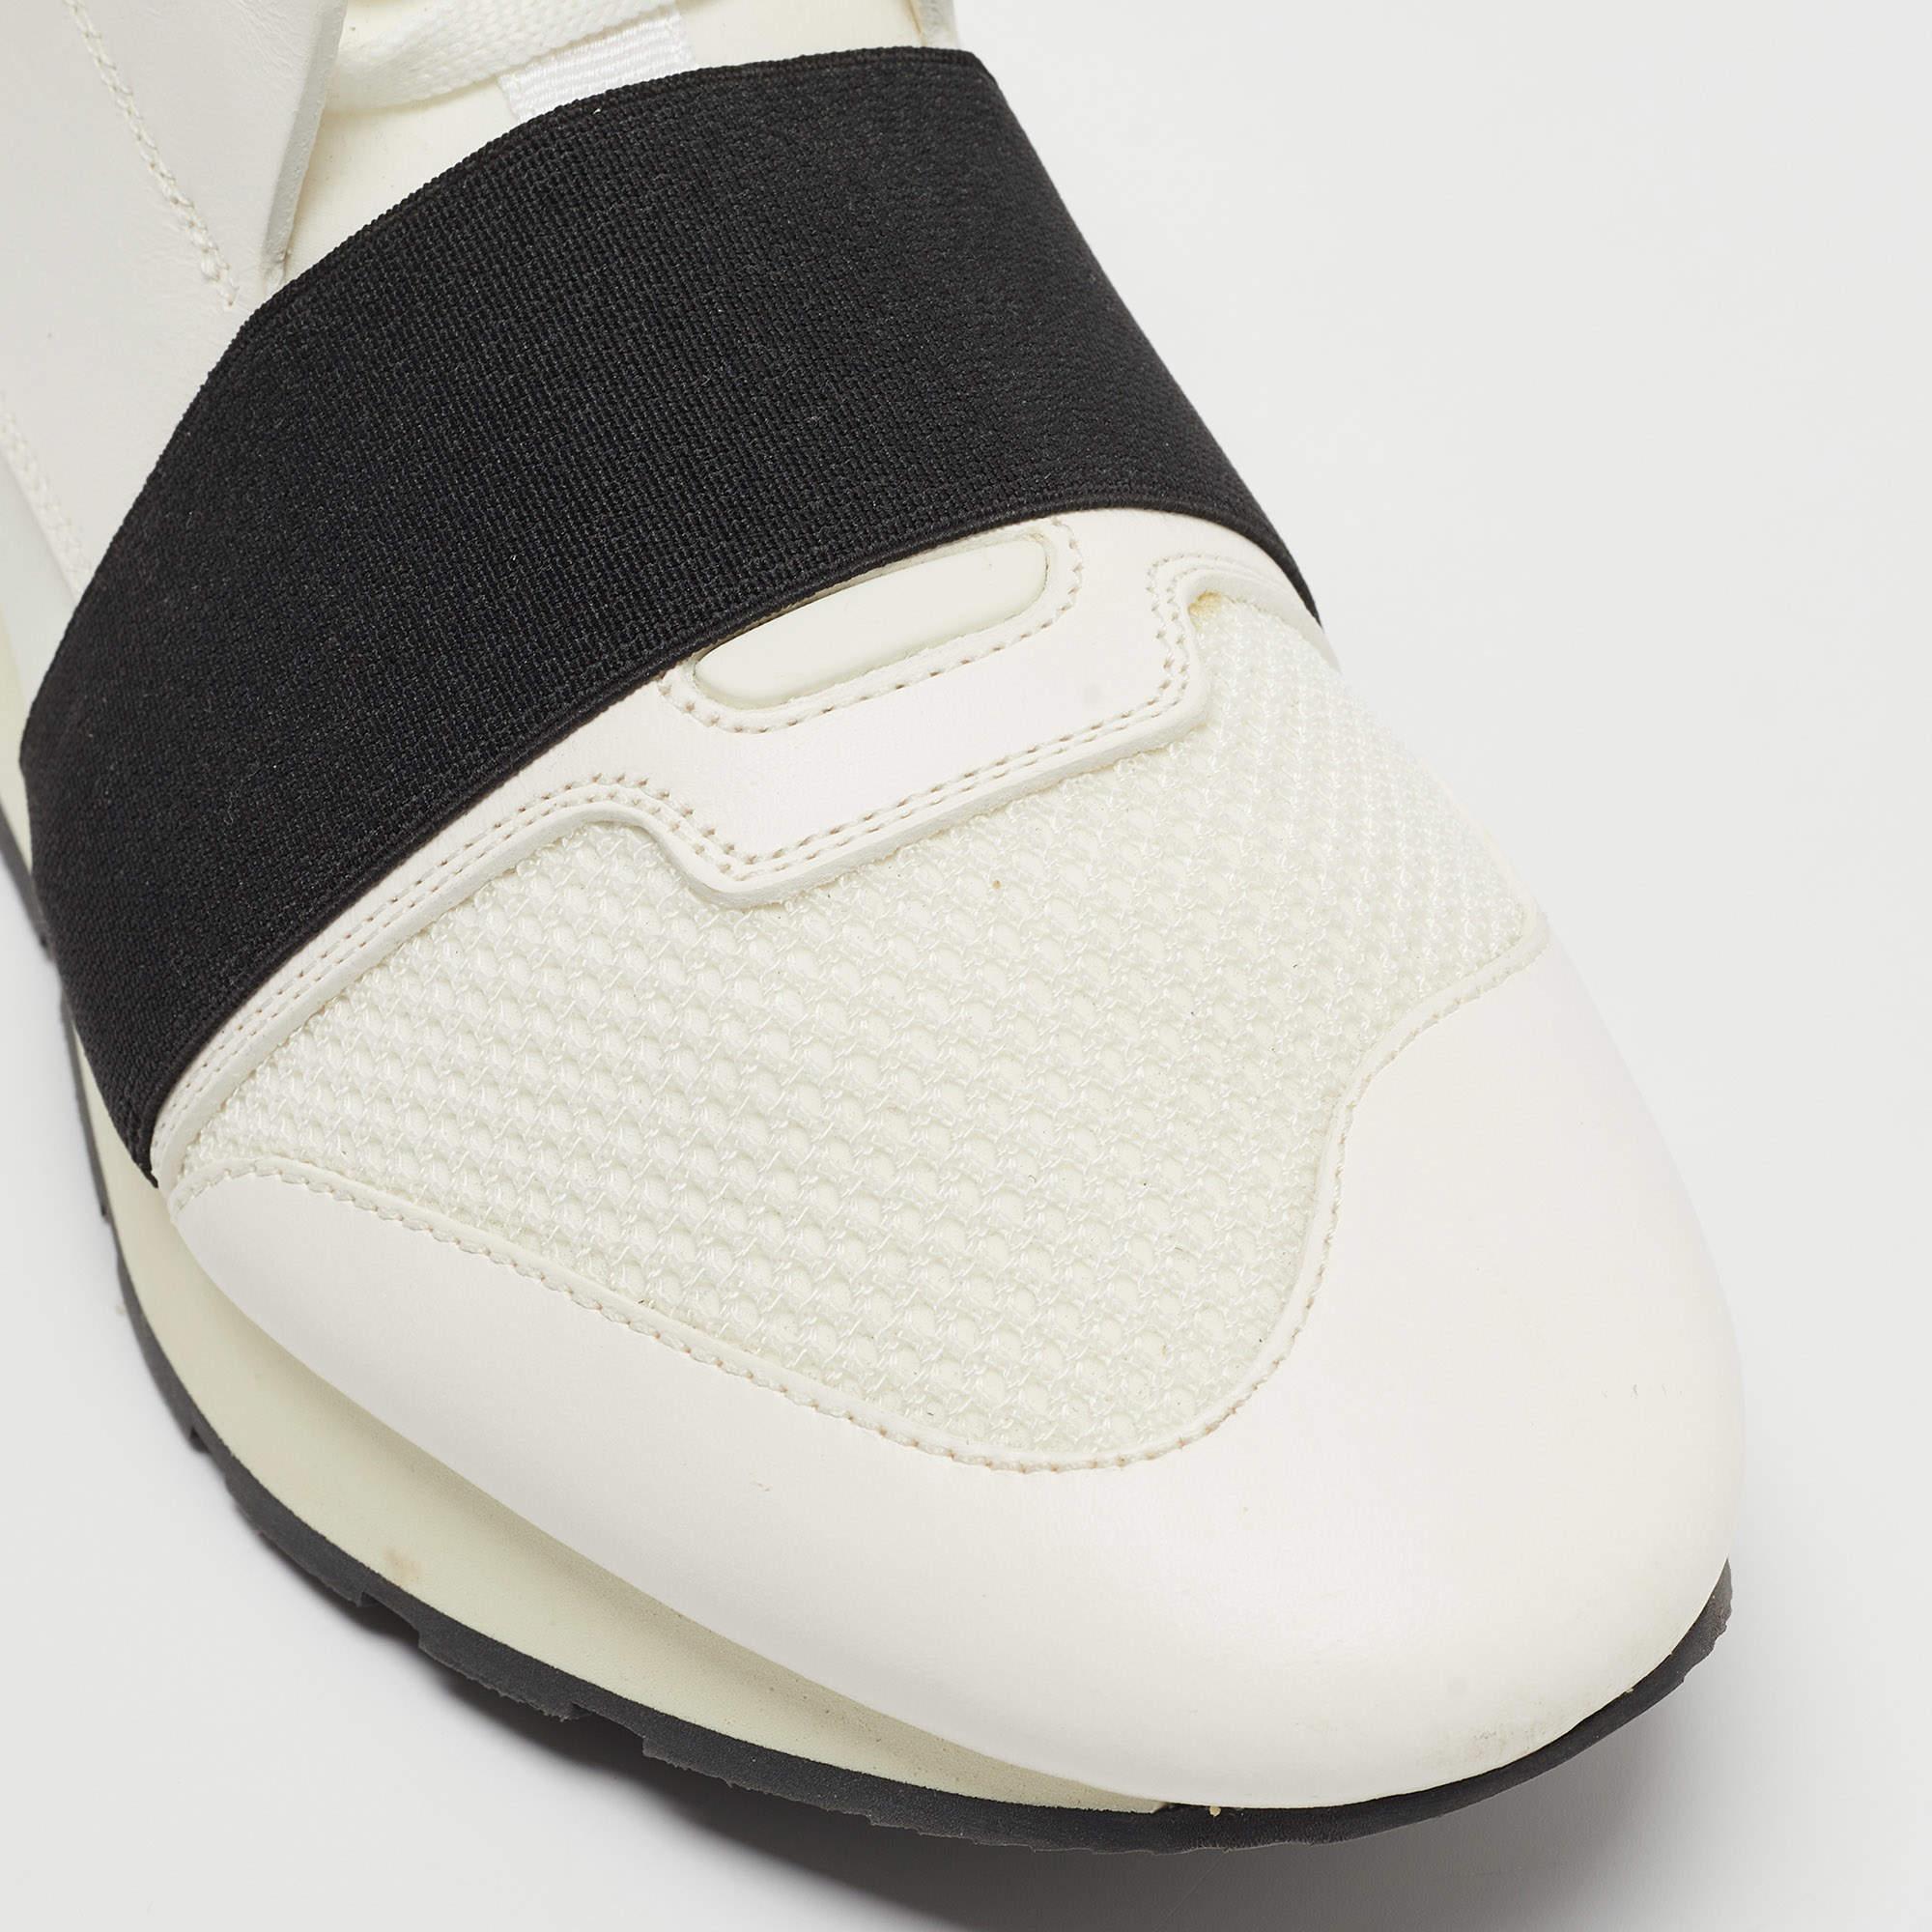 Die Race Runners Sneakers von Balenciaga sind Ihr neuester Schuh. Diese weißen Sneaker wurden aus Stoff, Leder und Mesh gefertigt und zeichnen sich durch eine schicke Silhouette aus. Sie haben eine überzogene Zehenpartie, Riemchendetails auf dem